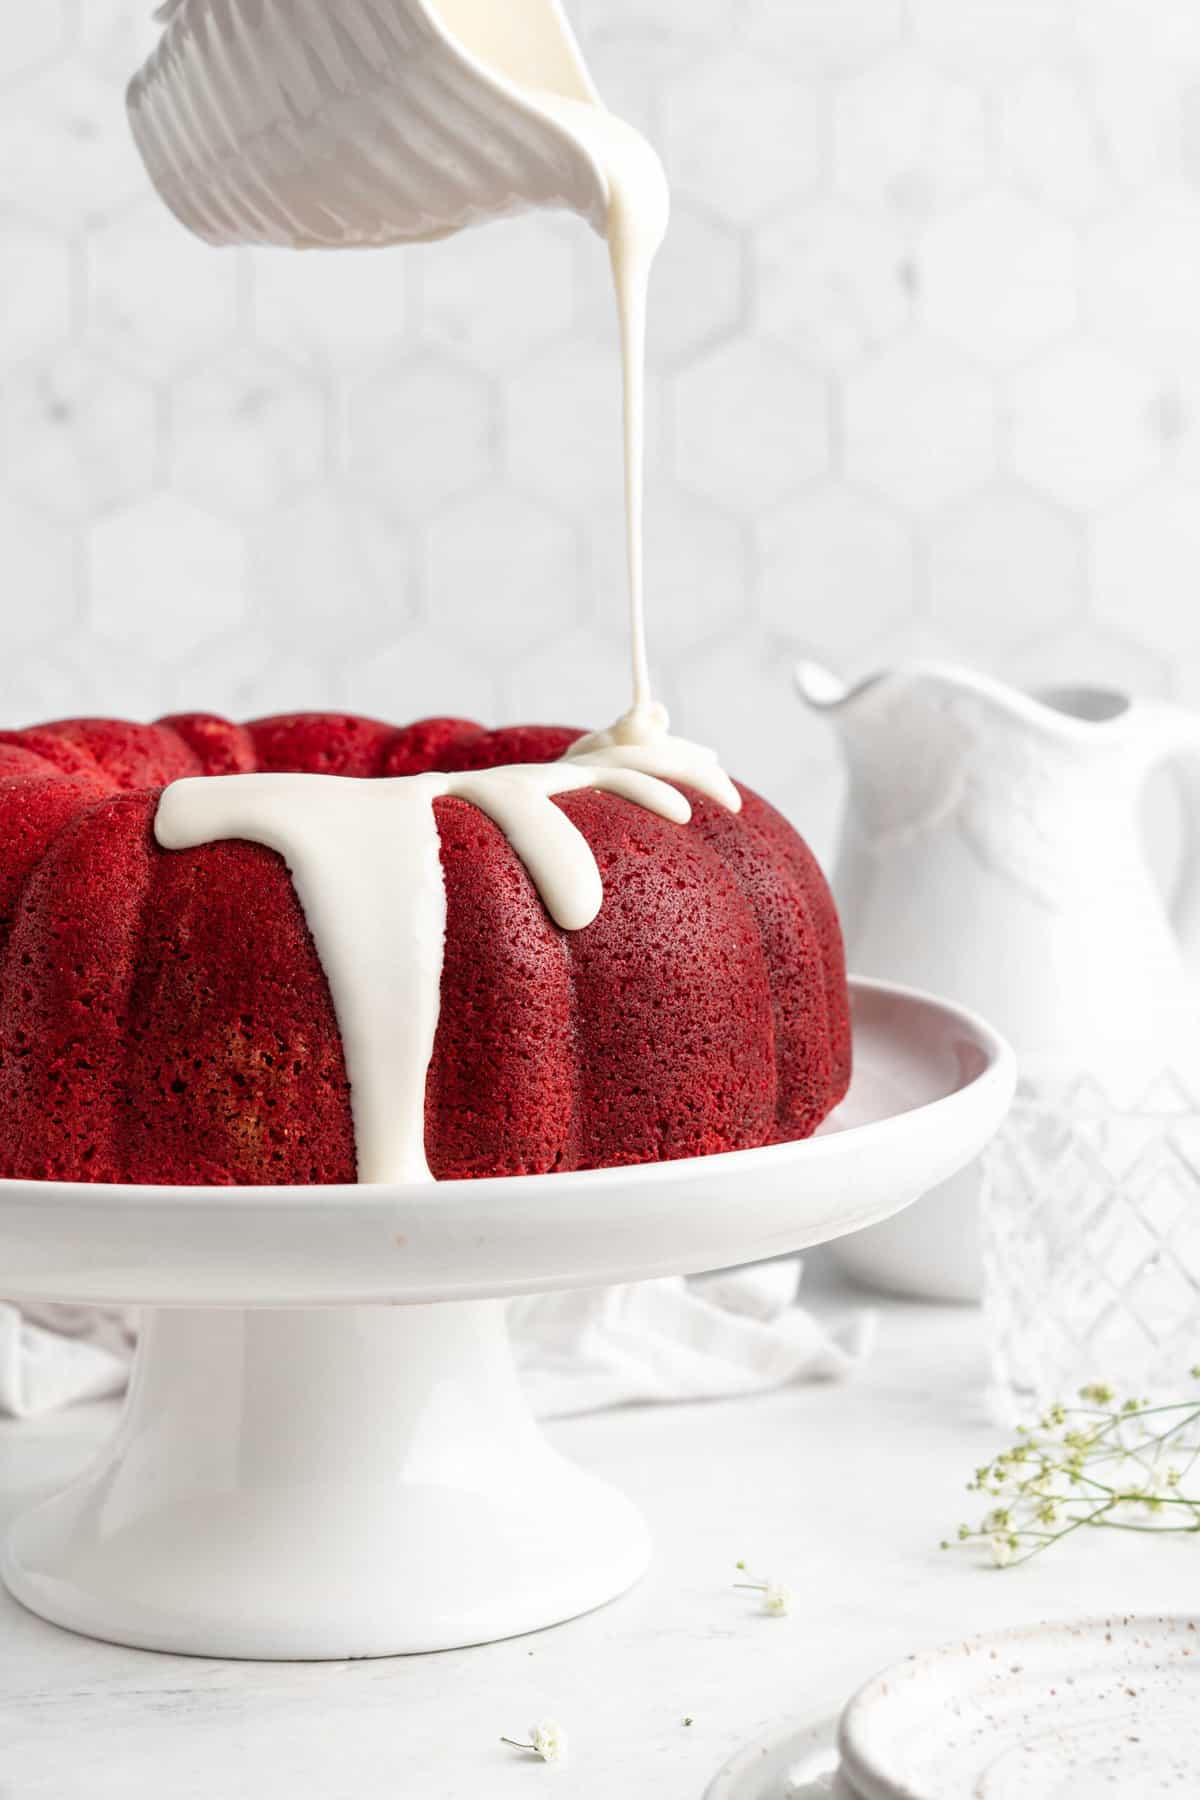 Ridiculously Easy Peppermint-Glazed Red Velvet Bundt Cake - The